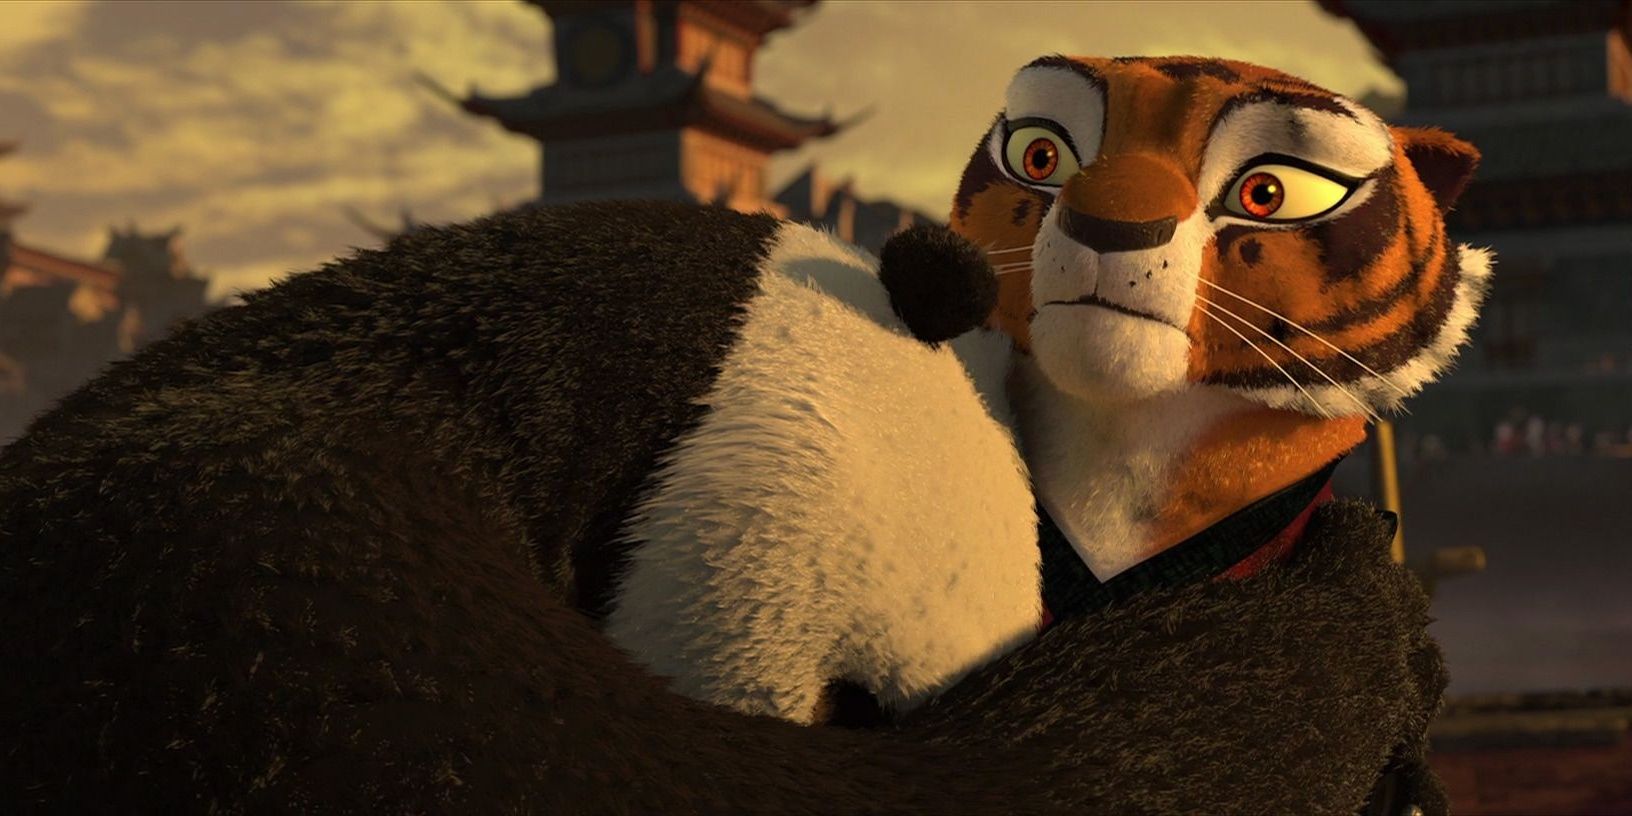 Po abbraccia Tigre in Kung Fu Panda 